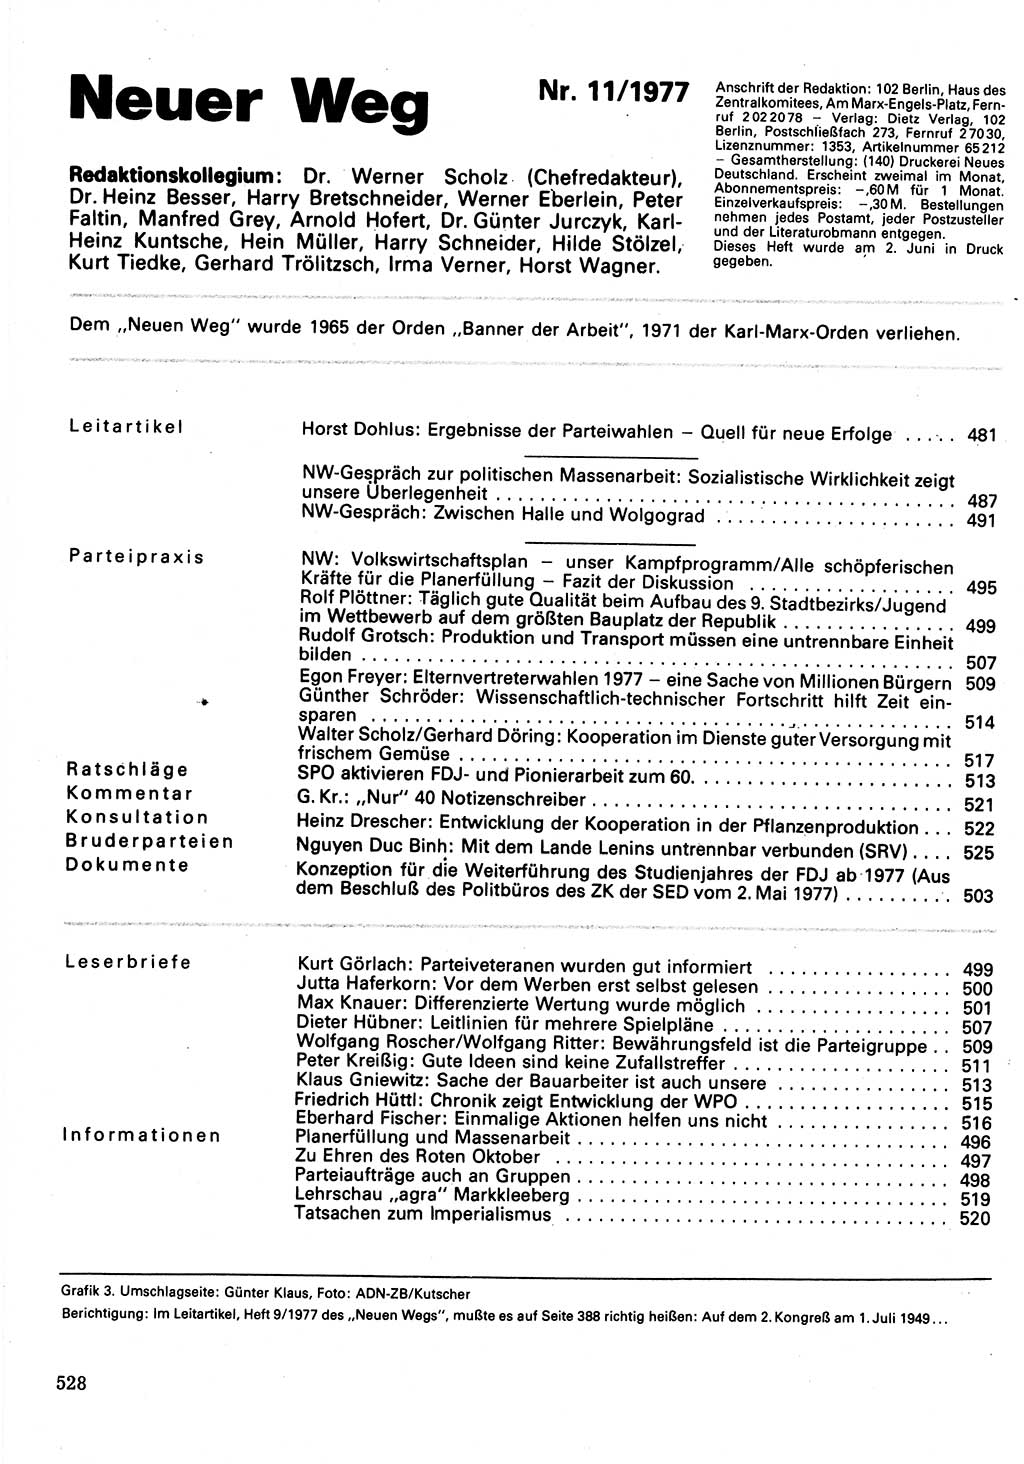 Neuer Weg (NW), Organ des Zentralkomitees (ZK) der SED (Sozialistische Einheitspartei Deutschlands) für Fragen des Parteilebens, 32. Jahrgang [Deutsche Demokratische Republik (DDR)] 1977, Seite 528 (NW ZK SED DDR 1977, S. 528)